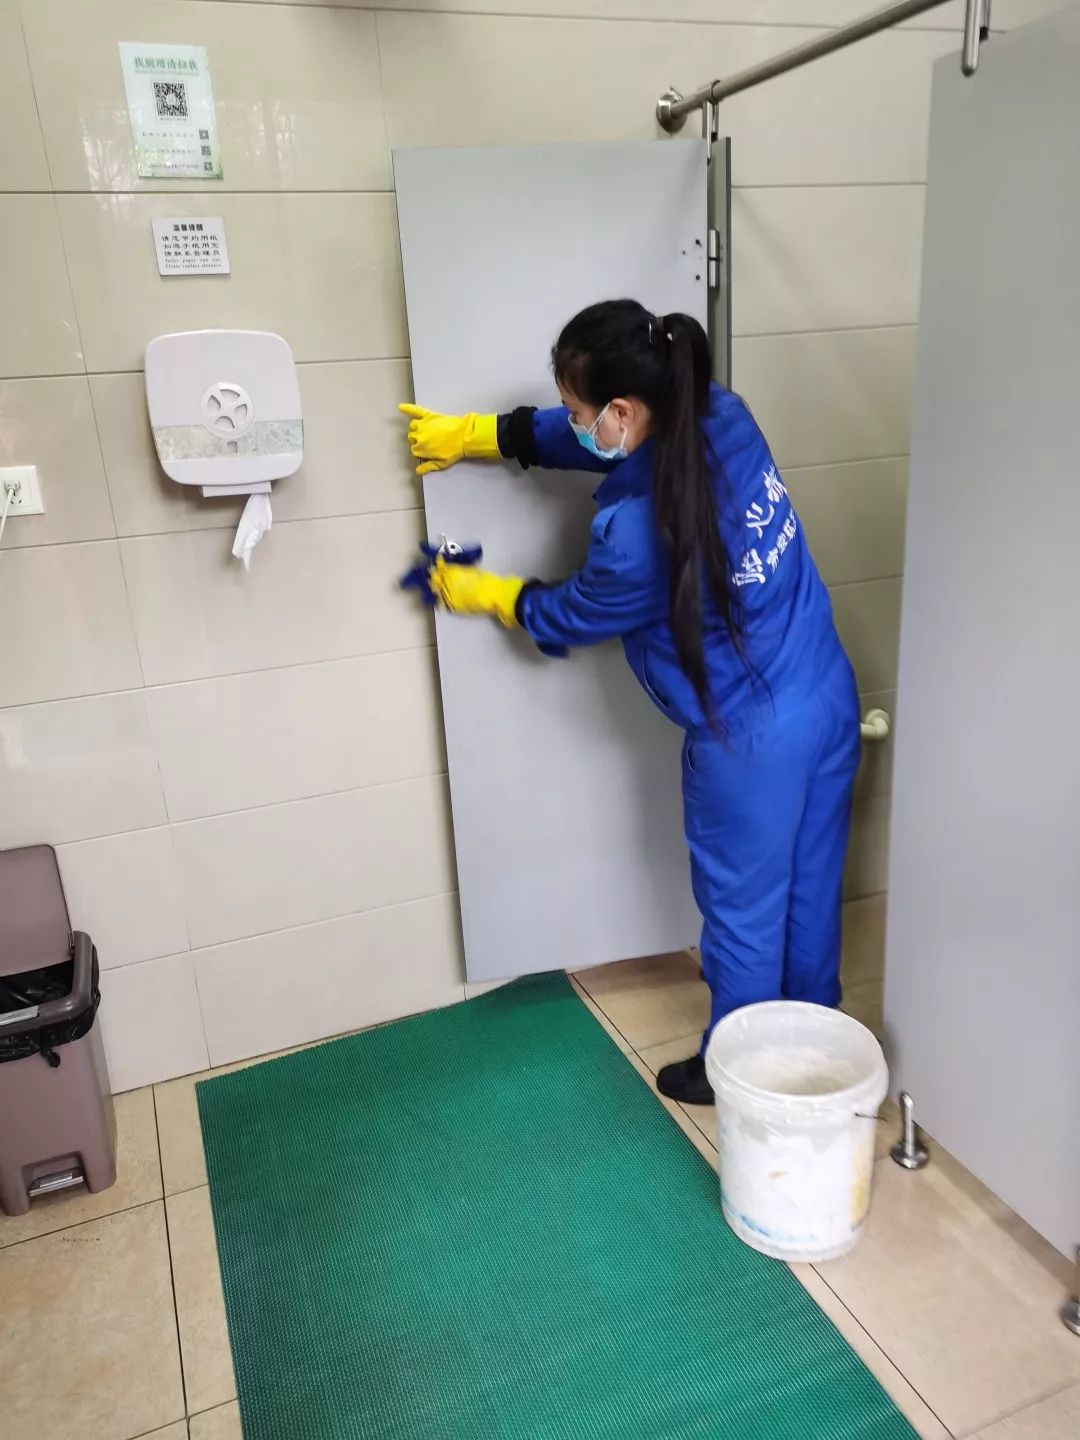 身着蓝色工作服的公厕保洁员频繁擦拭门把手,洗手台,纸巾盒等多处市民